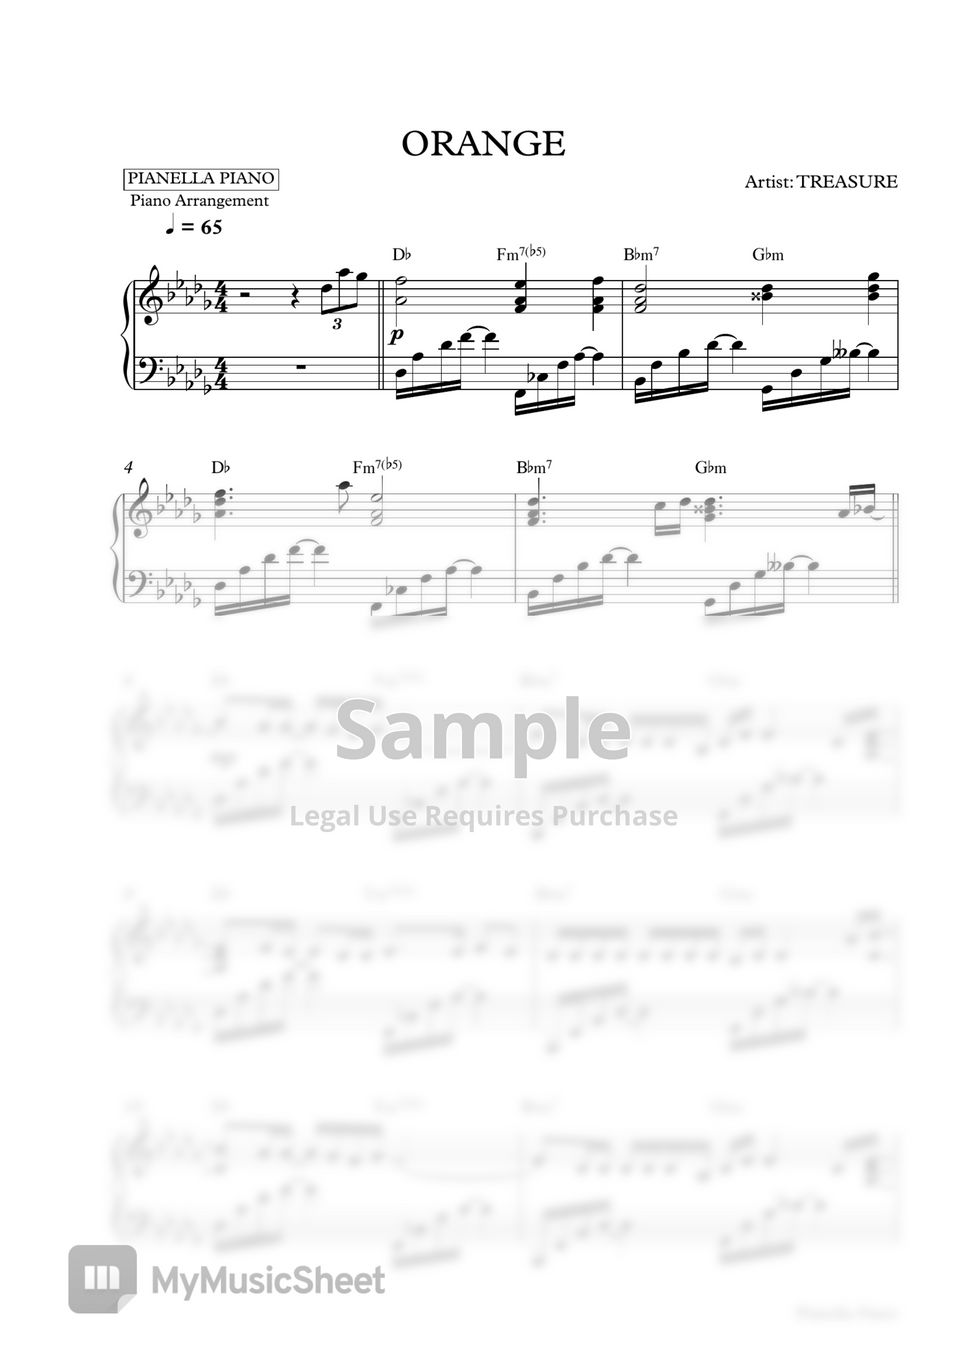 TREASURE - ORANGE (Piano Sheet) by Pianella Piano